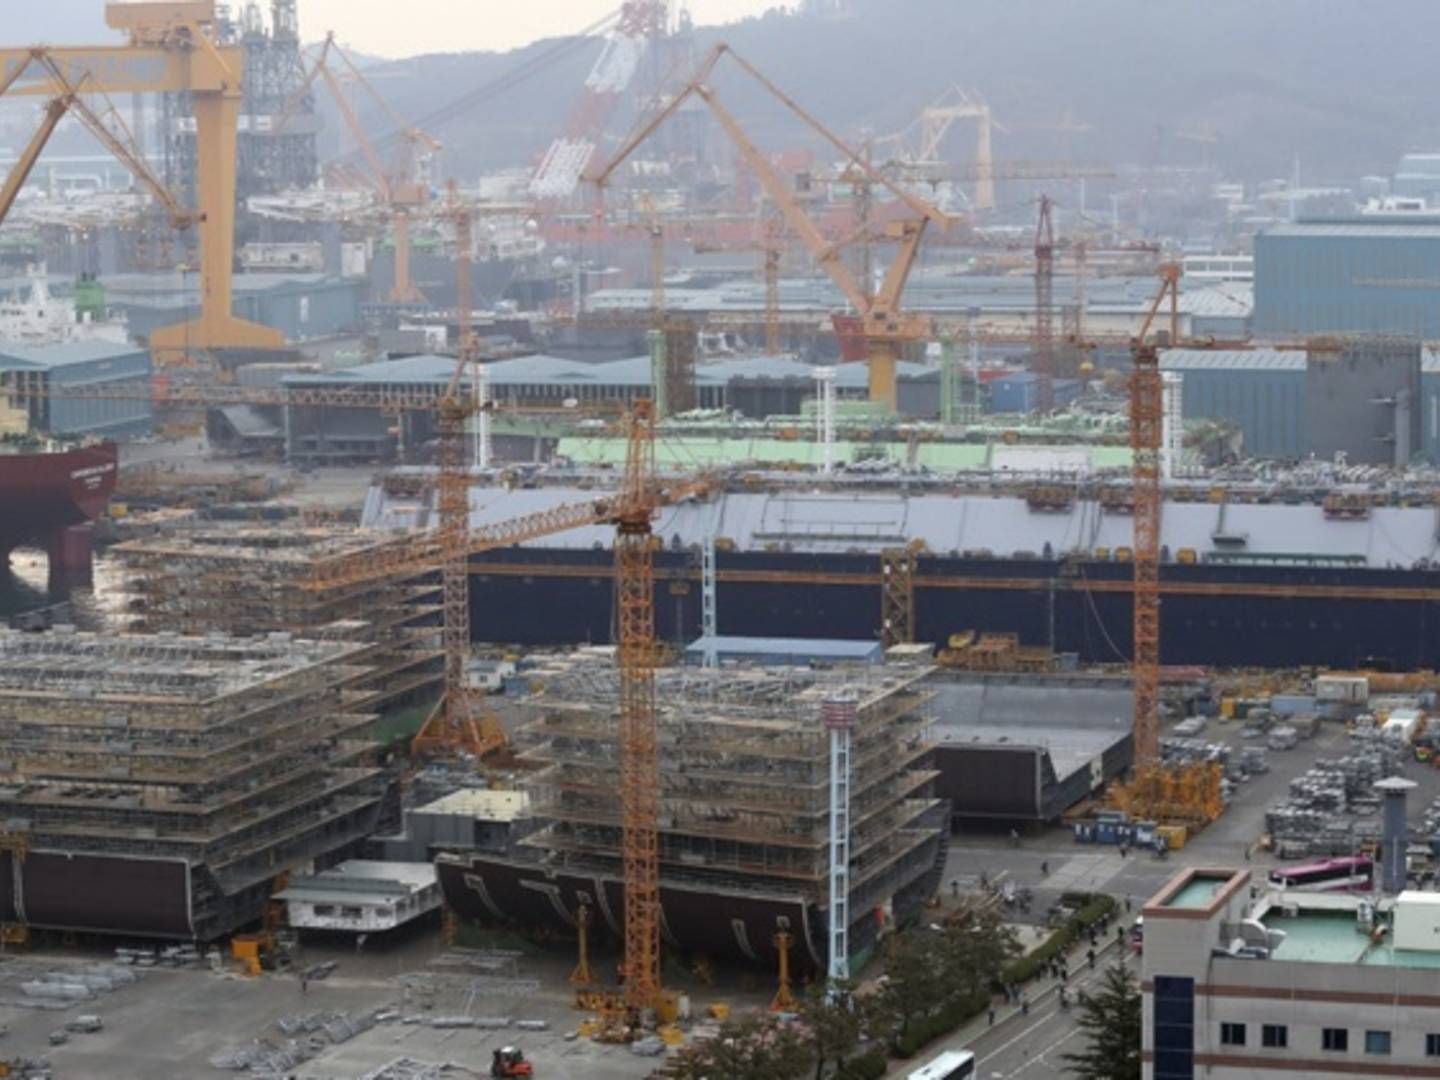 DSME-skibsværftet i Sydkorea - værftet har været i økonomiske vanskeligheder og forsøgt sig med en fusion med et andet sydkoreansk væft, men EU er imod. | Foto: Daewoo Shipbuilding & Marine Engineering/Yonhap